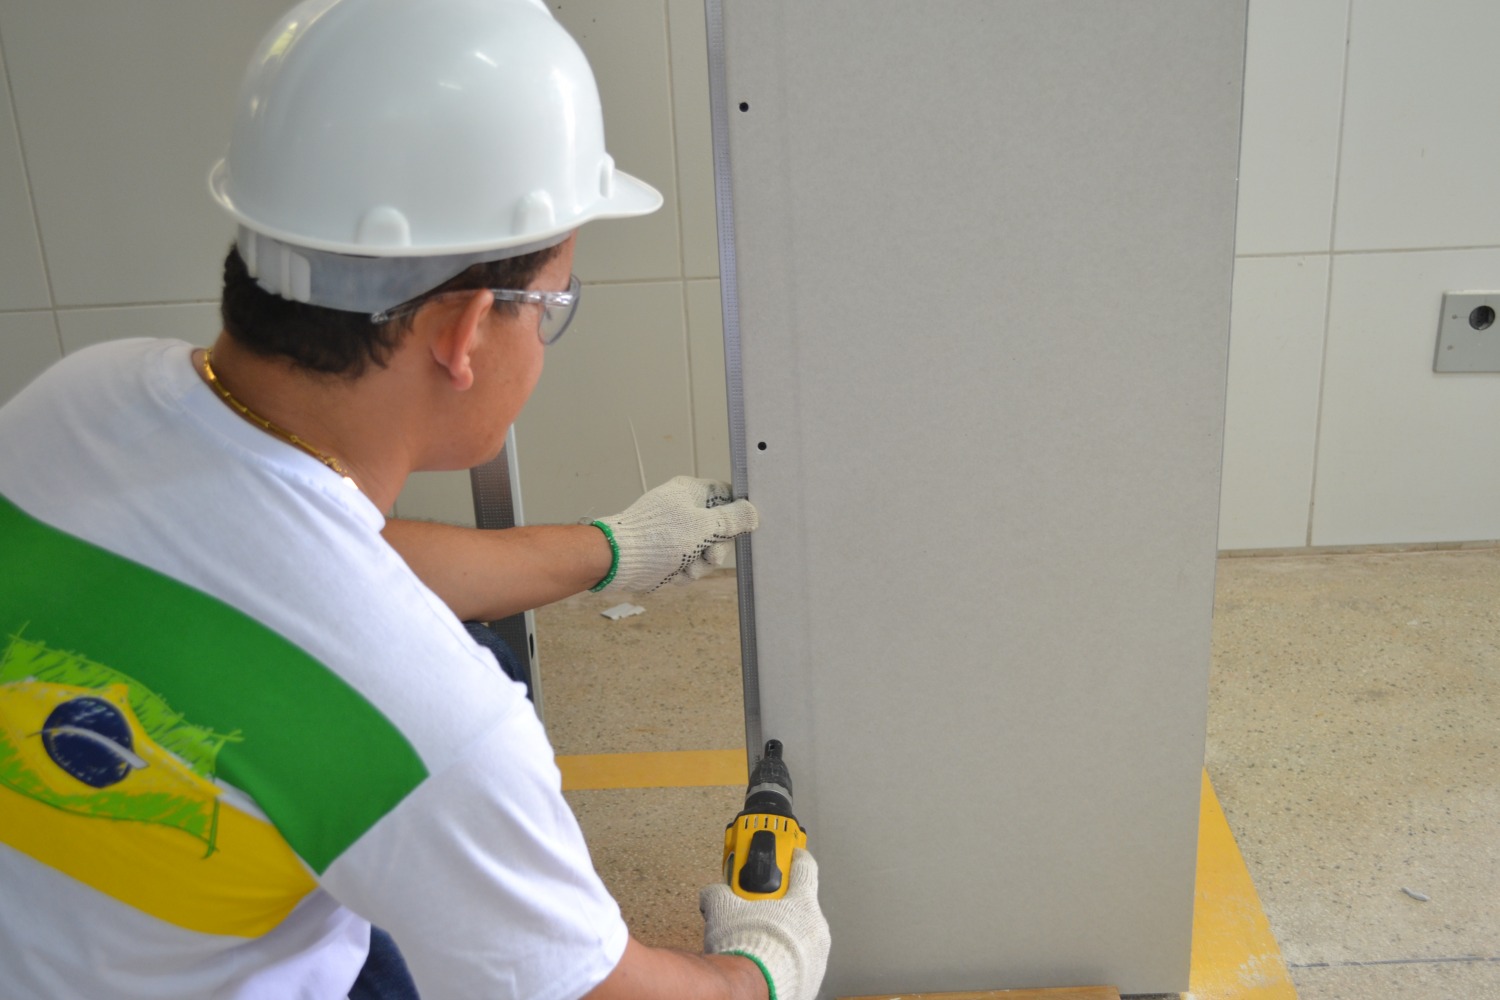 Drywall é um dos principais aliados da construção sustentável - Usado em paredes e forros, material gera seis vezes menos resíduos do que a alvenaria